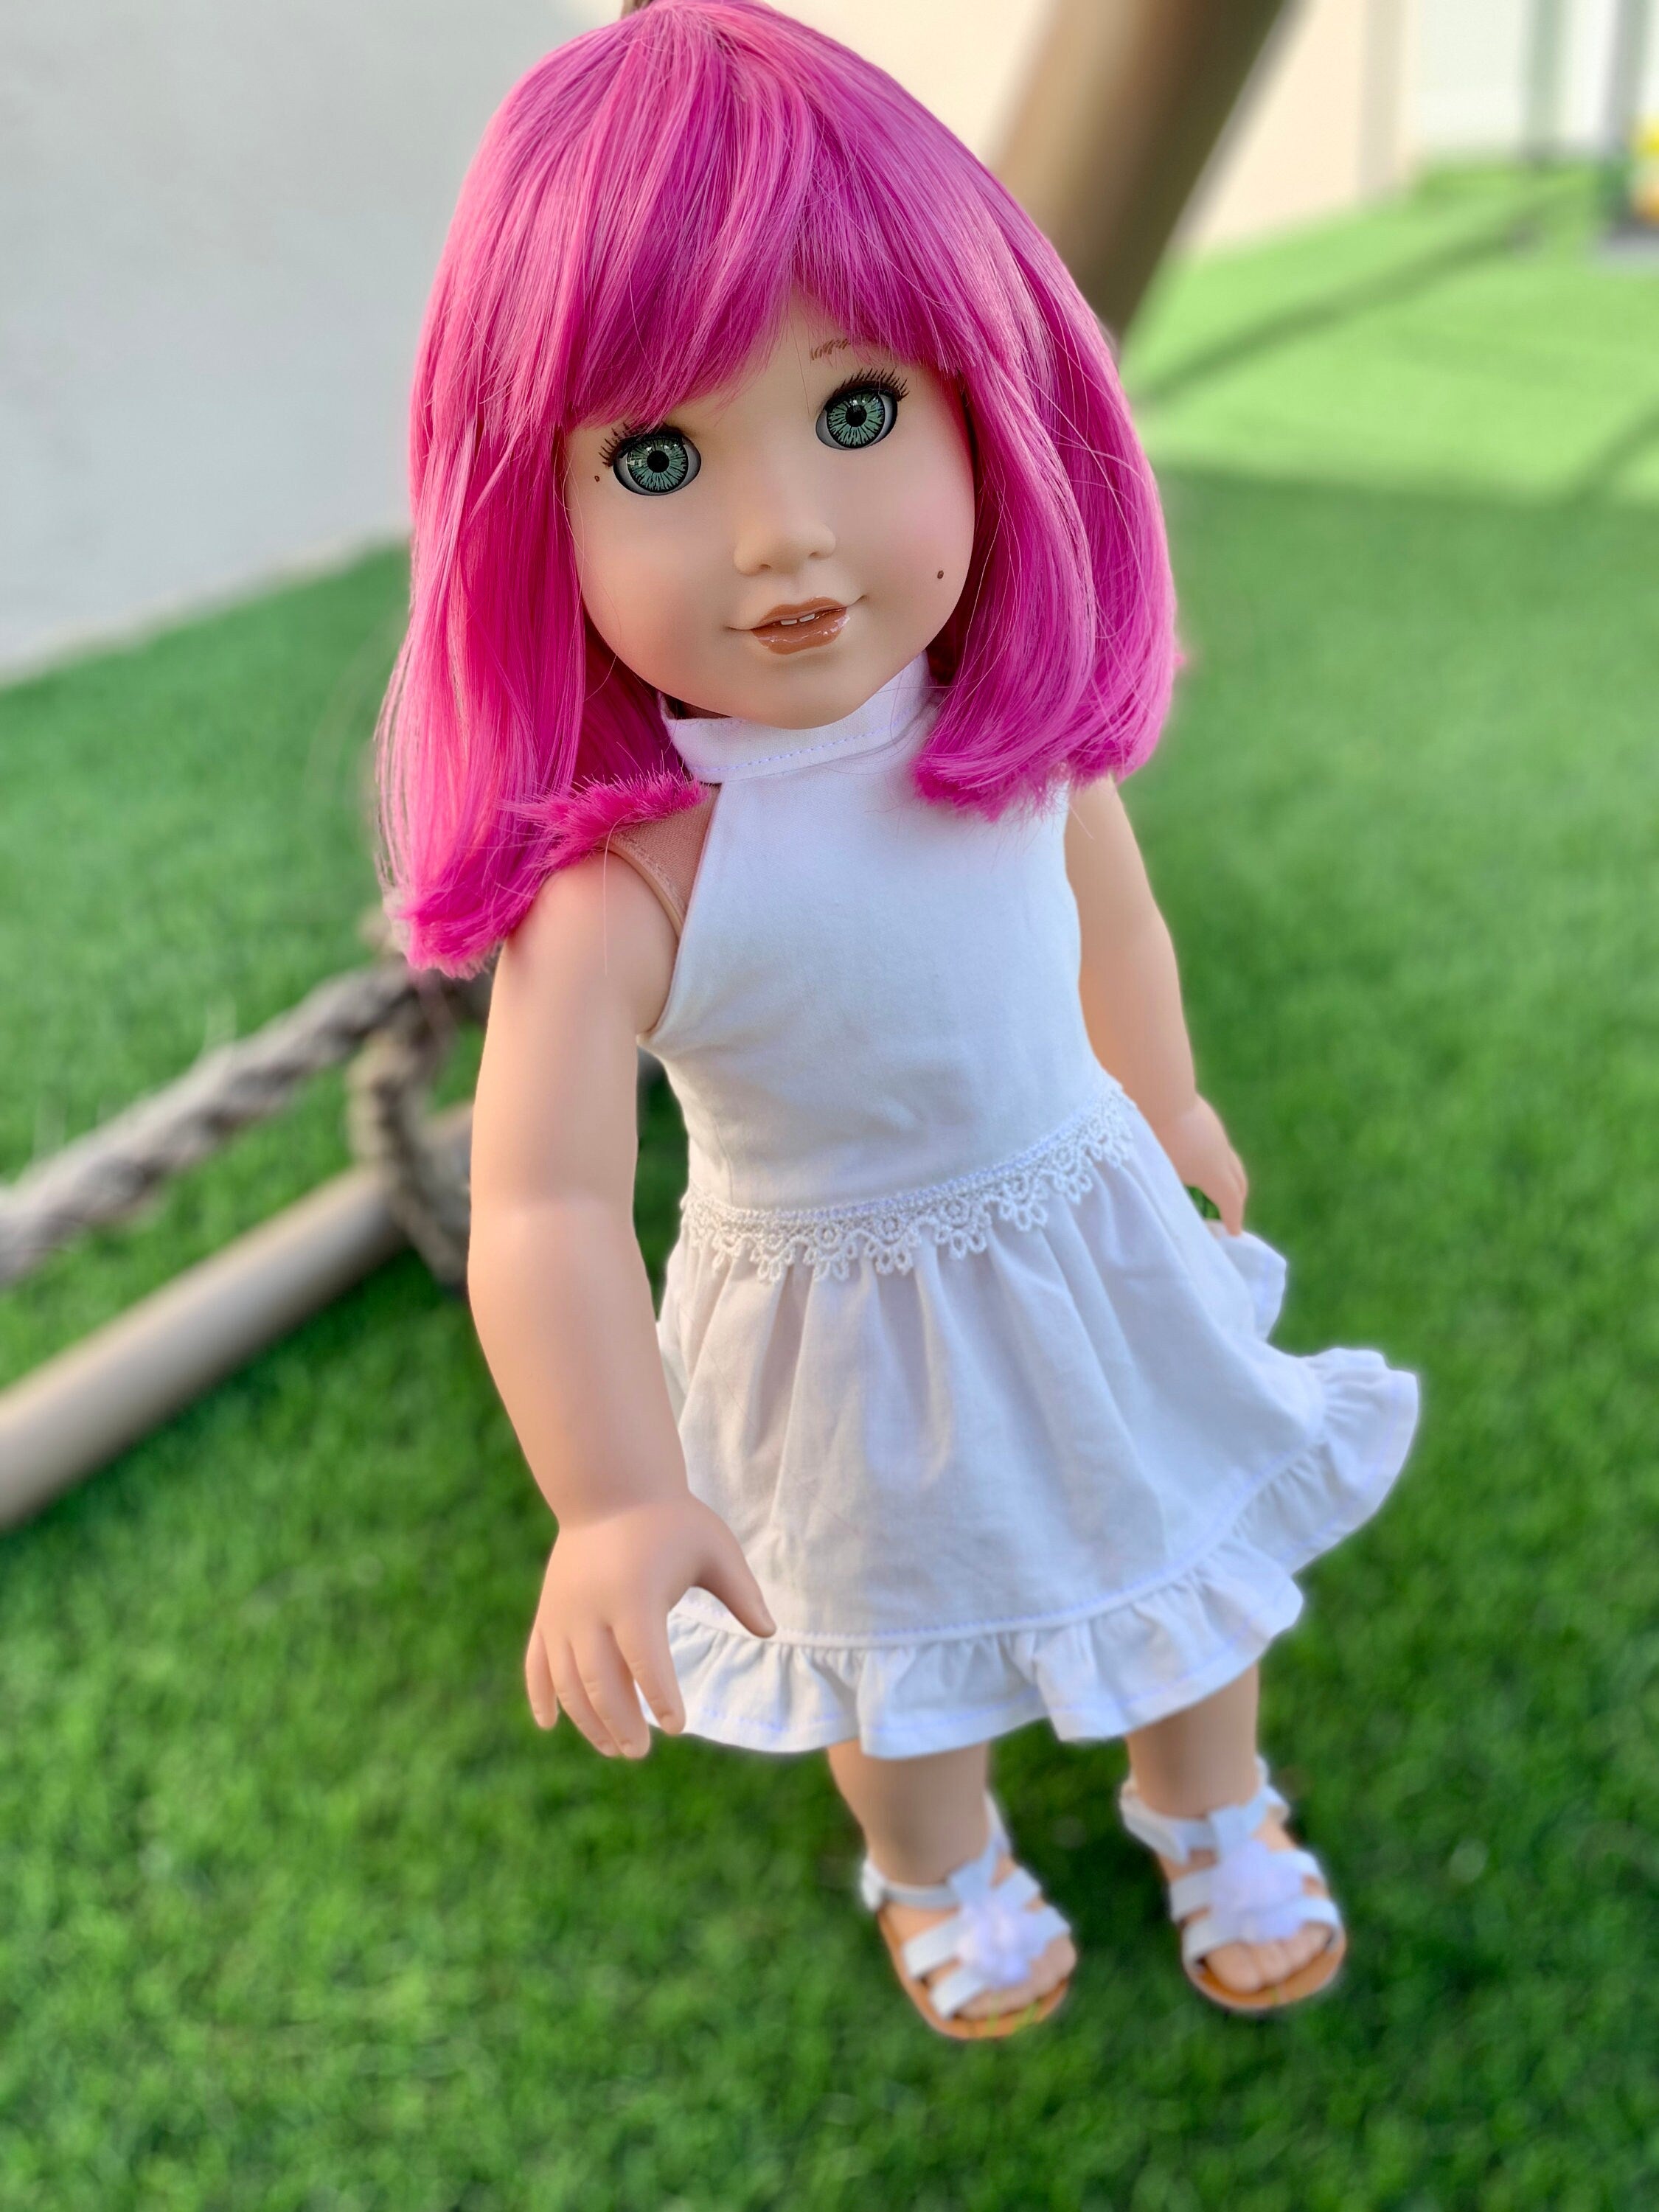 Custom doll wig for 18" American Girl Dolls - Heat Safe - Tangle Resistant - fits 10-11" head size of 18" dolls OG Blythe BJD Gotz Hot pink